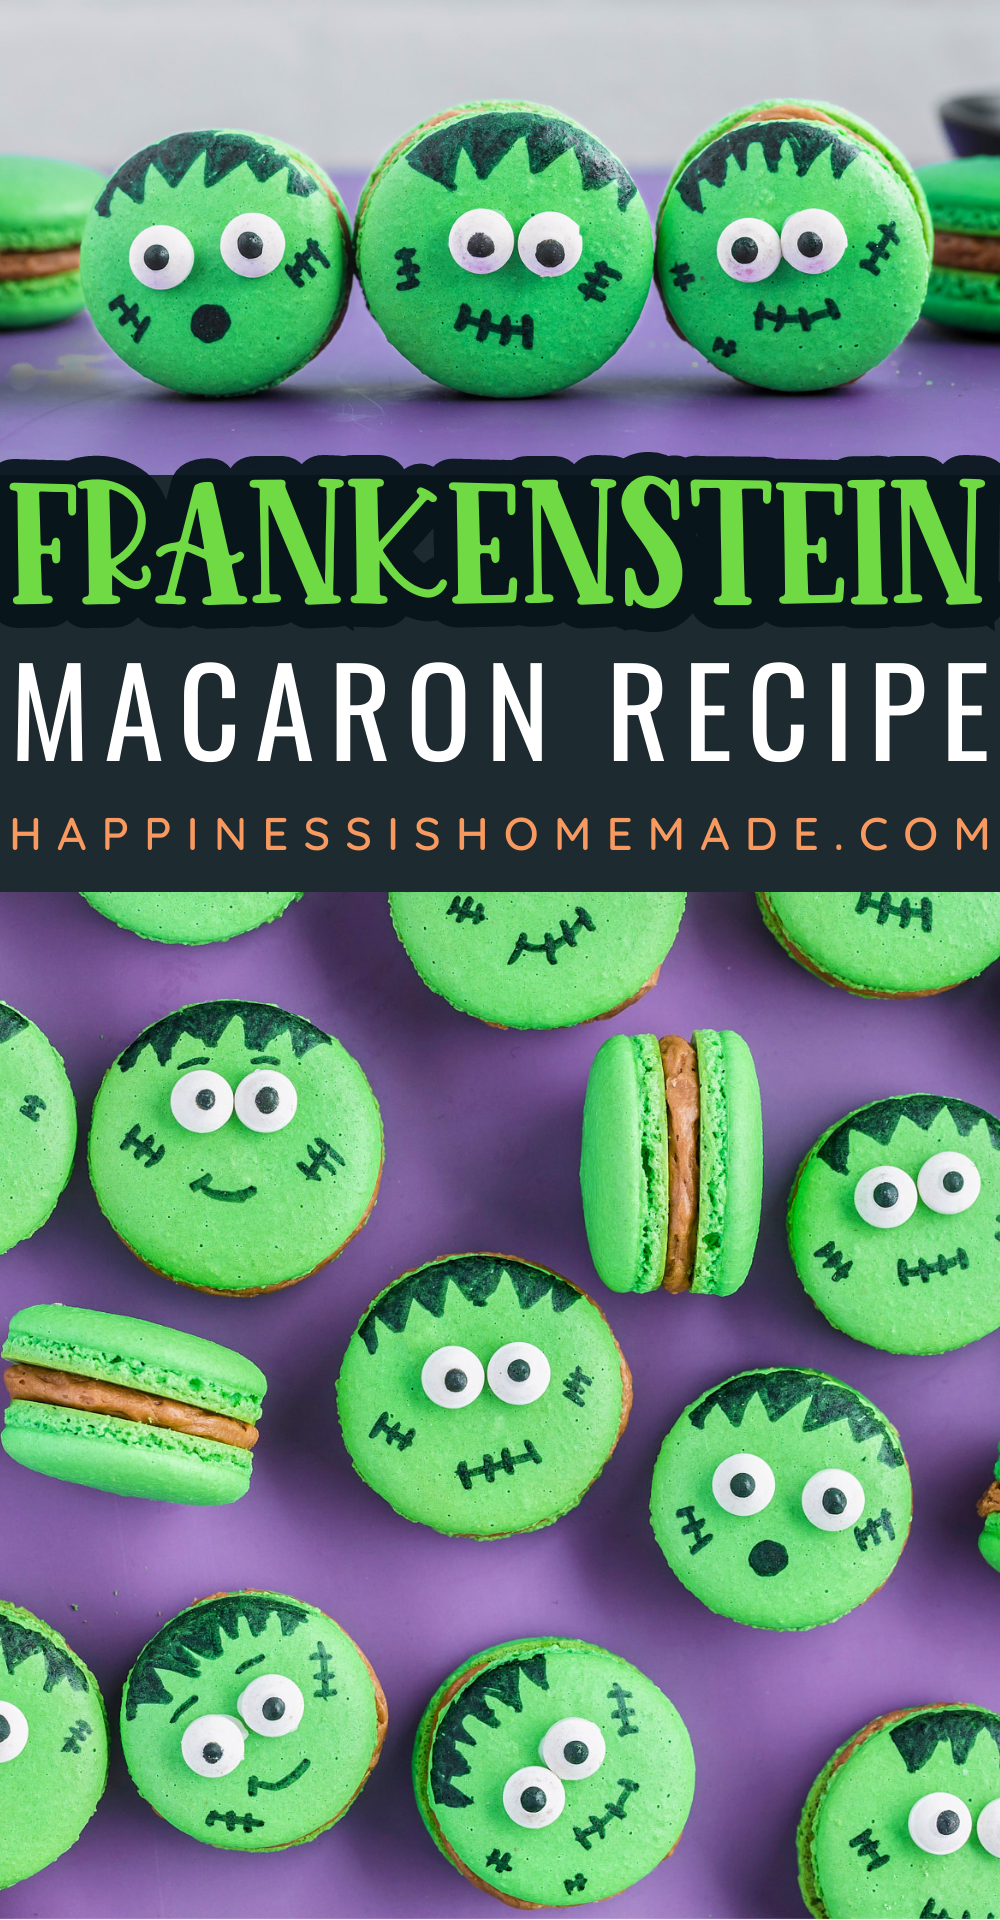 Frankenstein macaron recipe